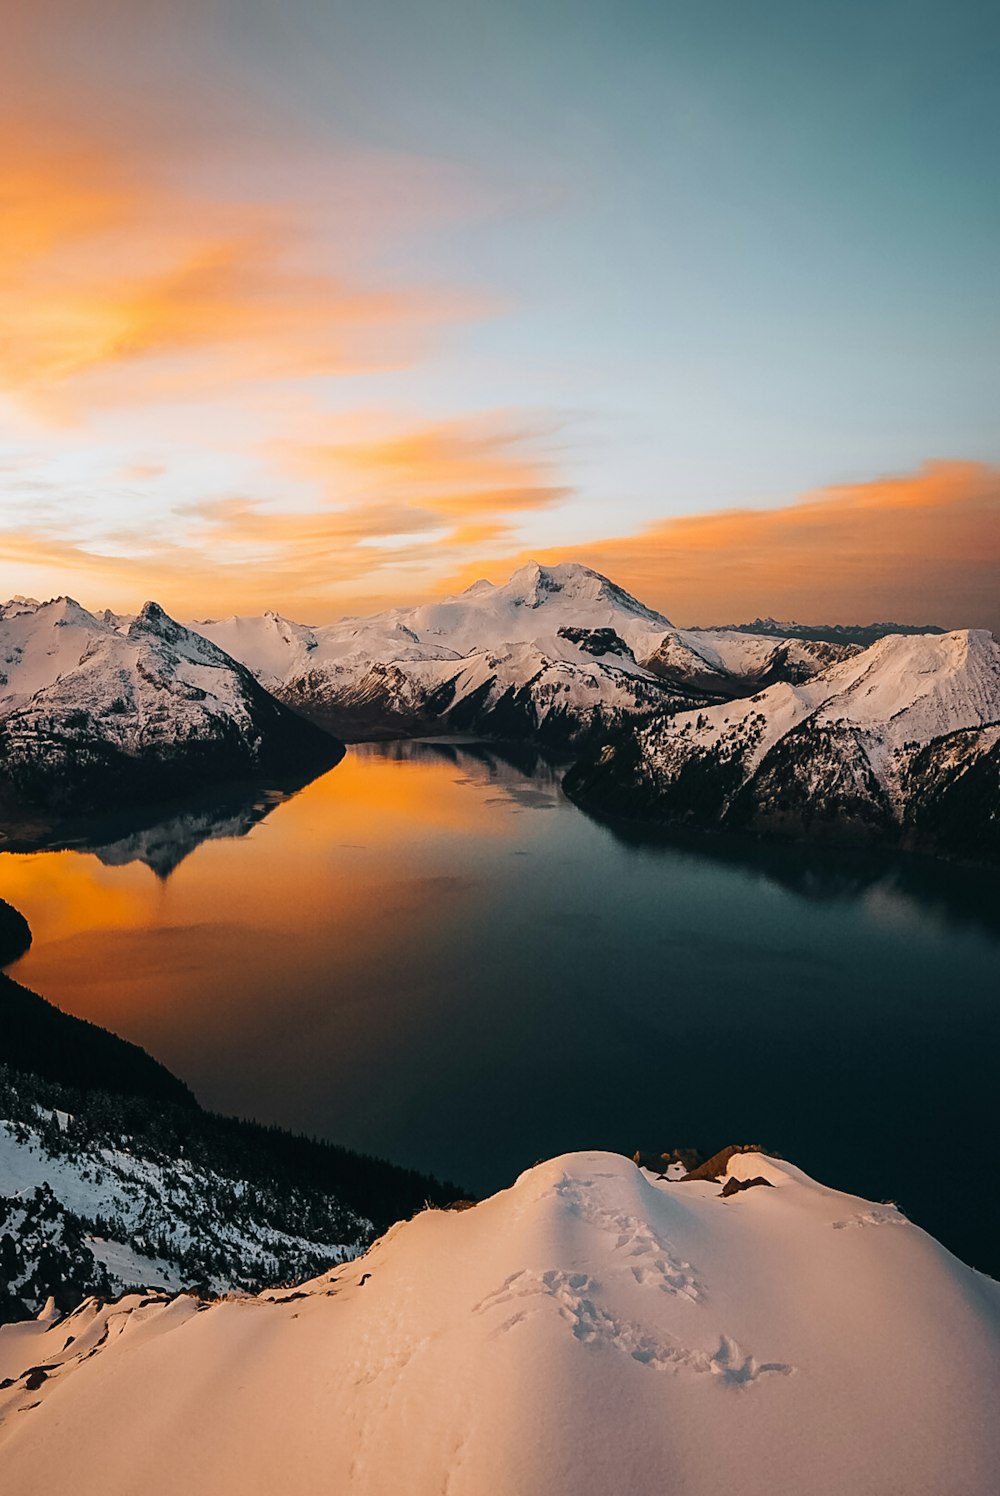 une vue d’un lac entouré de montagnes enneigées